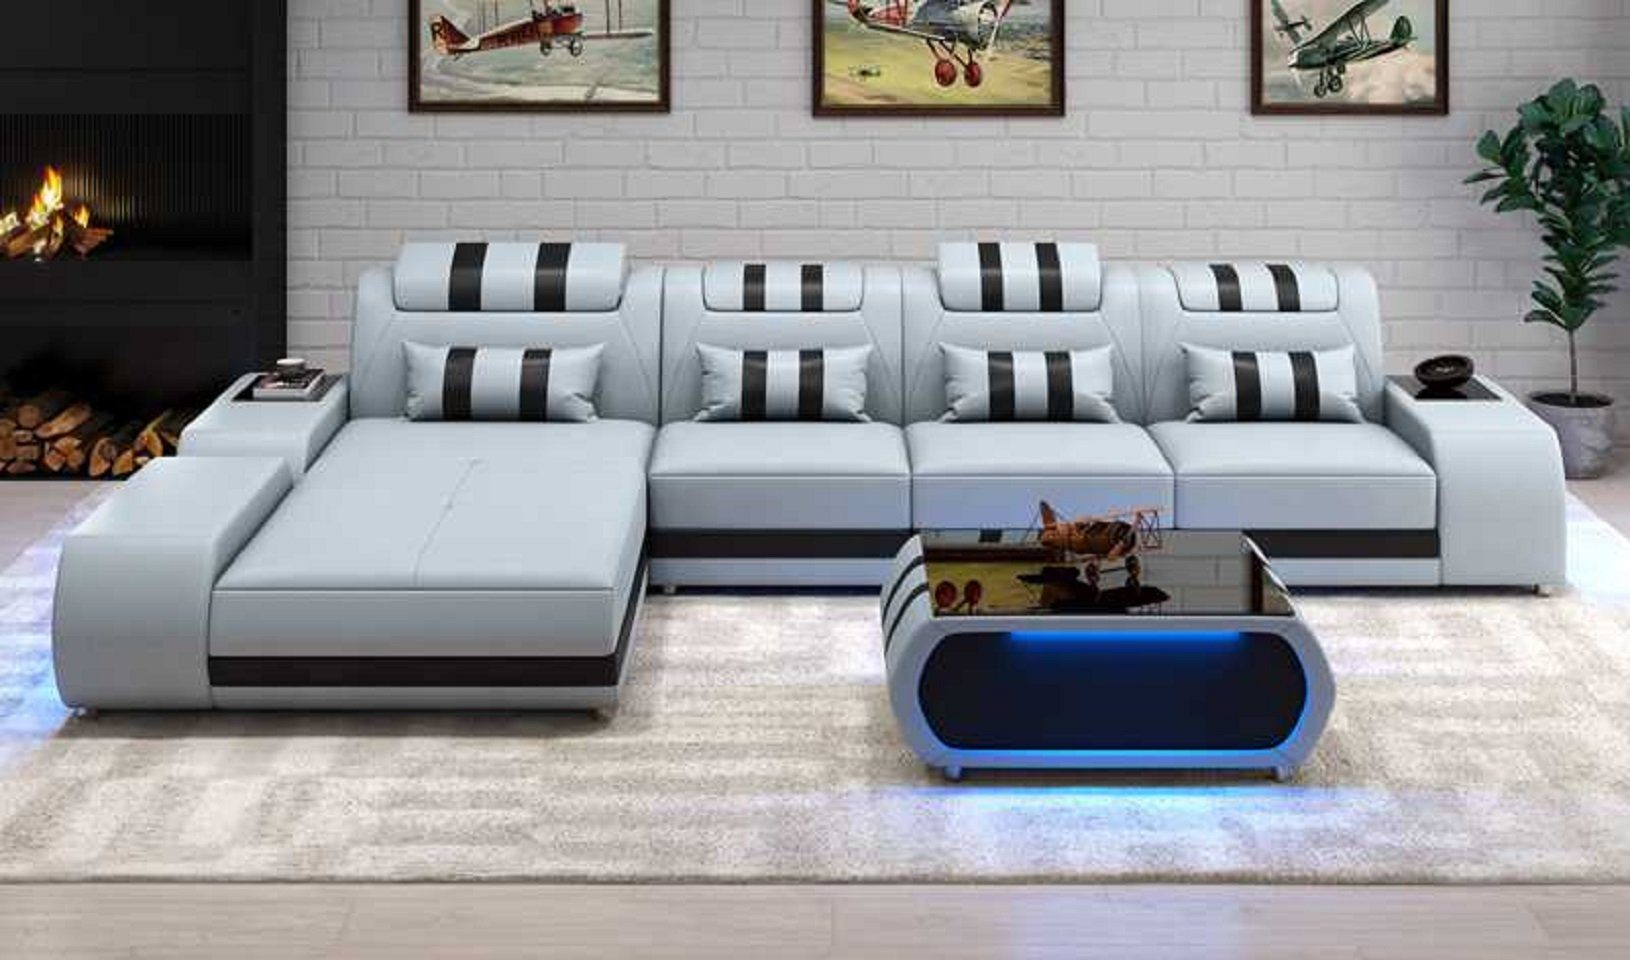 JVmoebel Ecksofa Form Grau Ecksofa Ledersofa L Made in 3 Eckgarnitur Design Luxus Couch Europe Couchen, Teile, Sofa